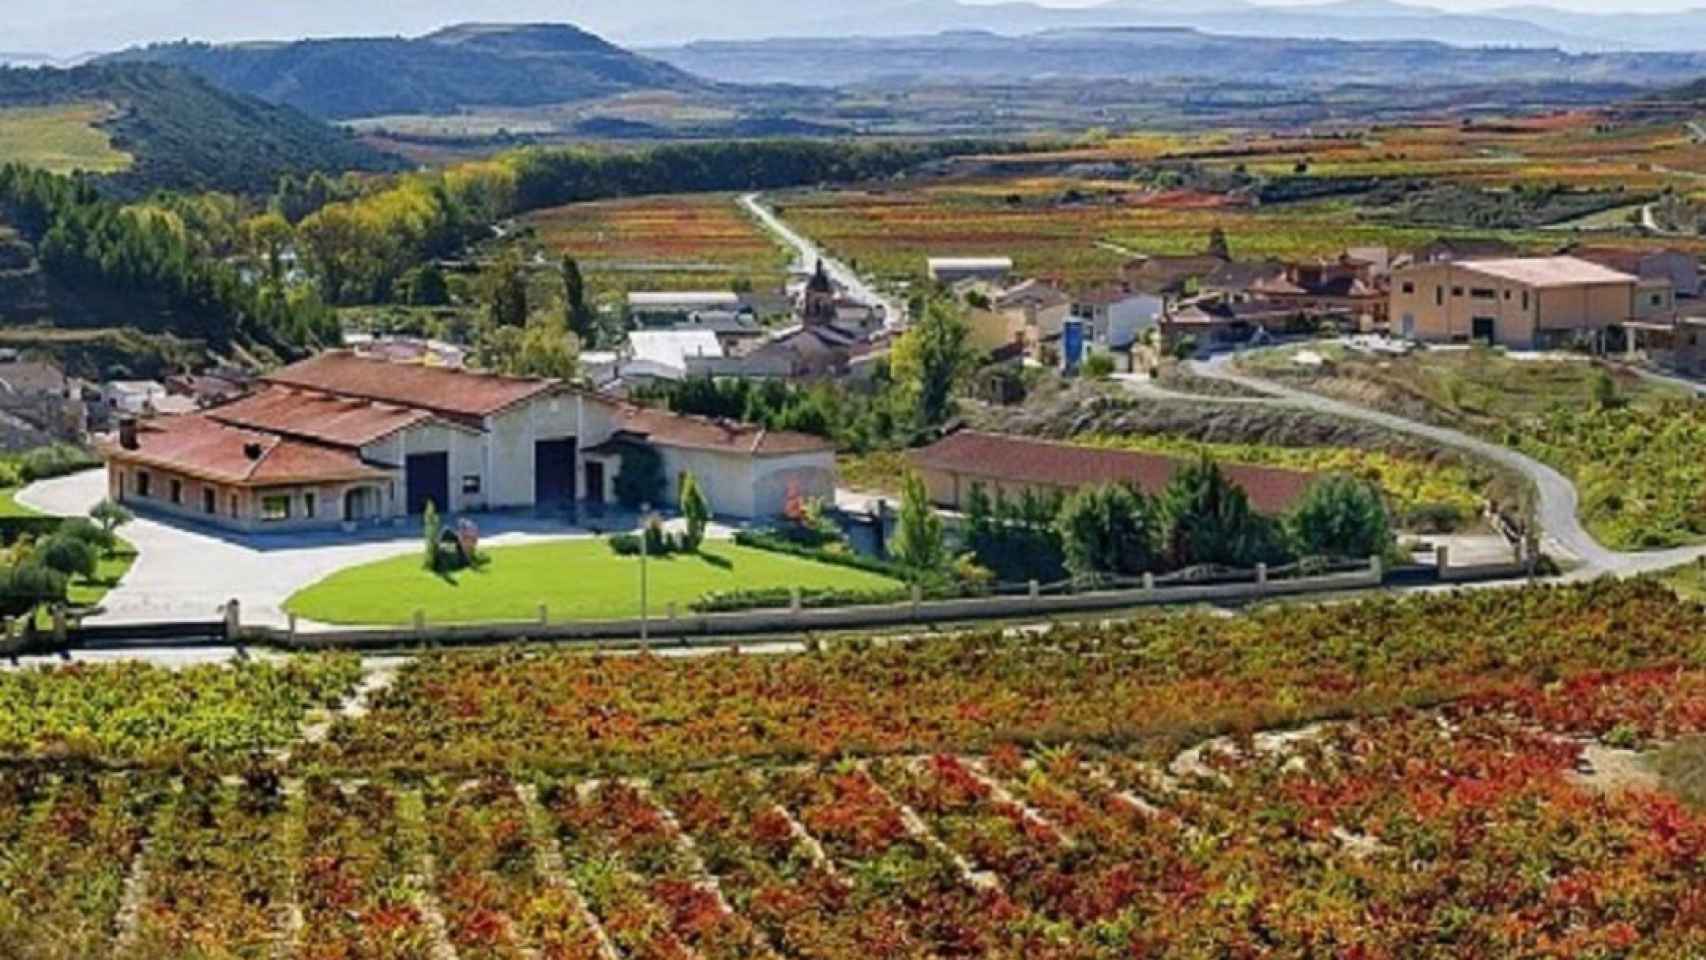 Bodegas Altún en Baños de Ebro, la localidad gobernada por el PP con algunos de los mejores vinos de Euskadi / Bodegas Altún